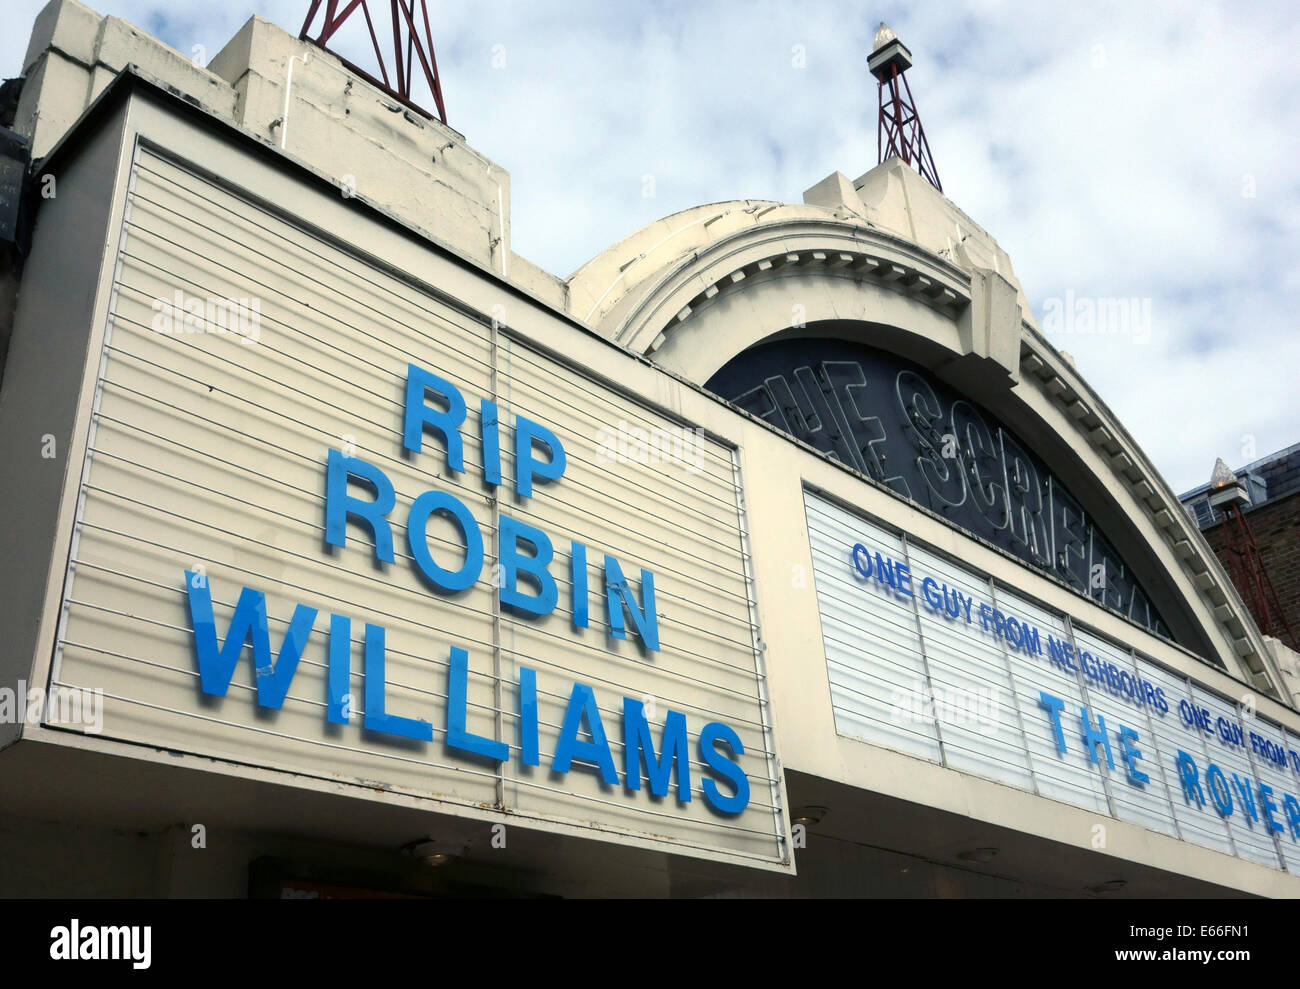 Hommage an Robin Williams auf dem Bildschirm auf den grünen Kino, London Stockfoto